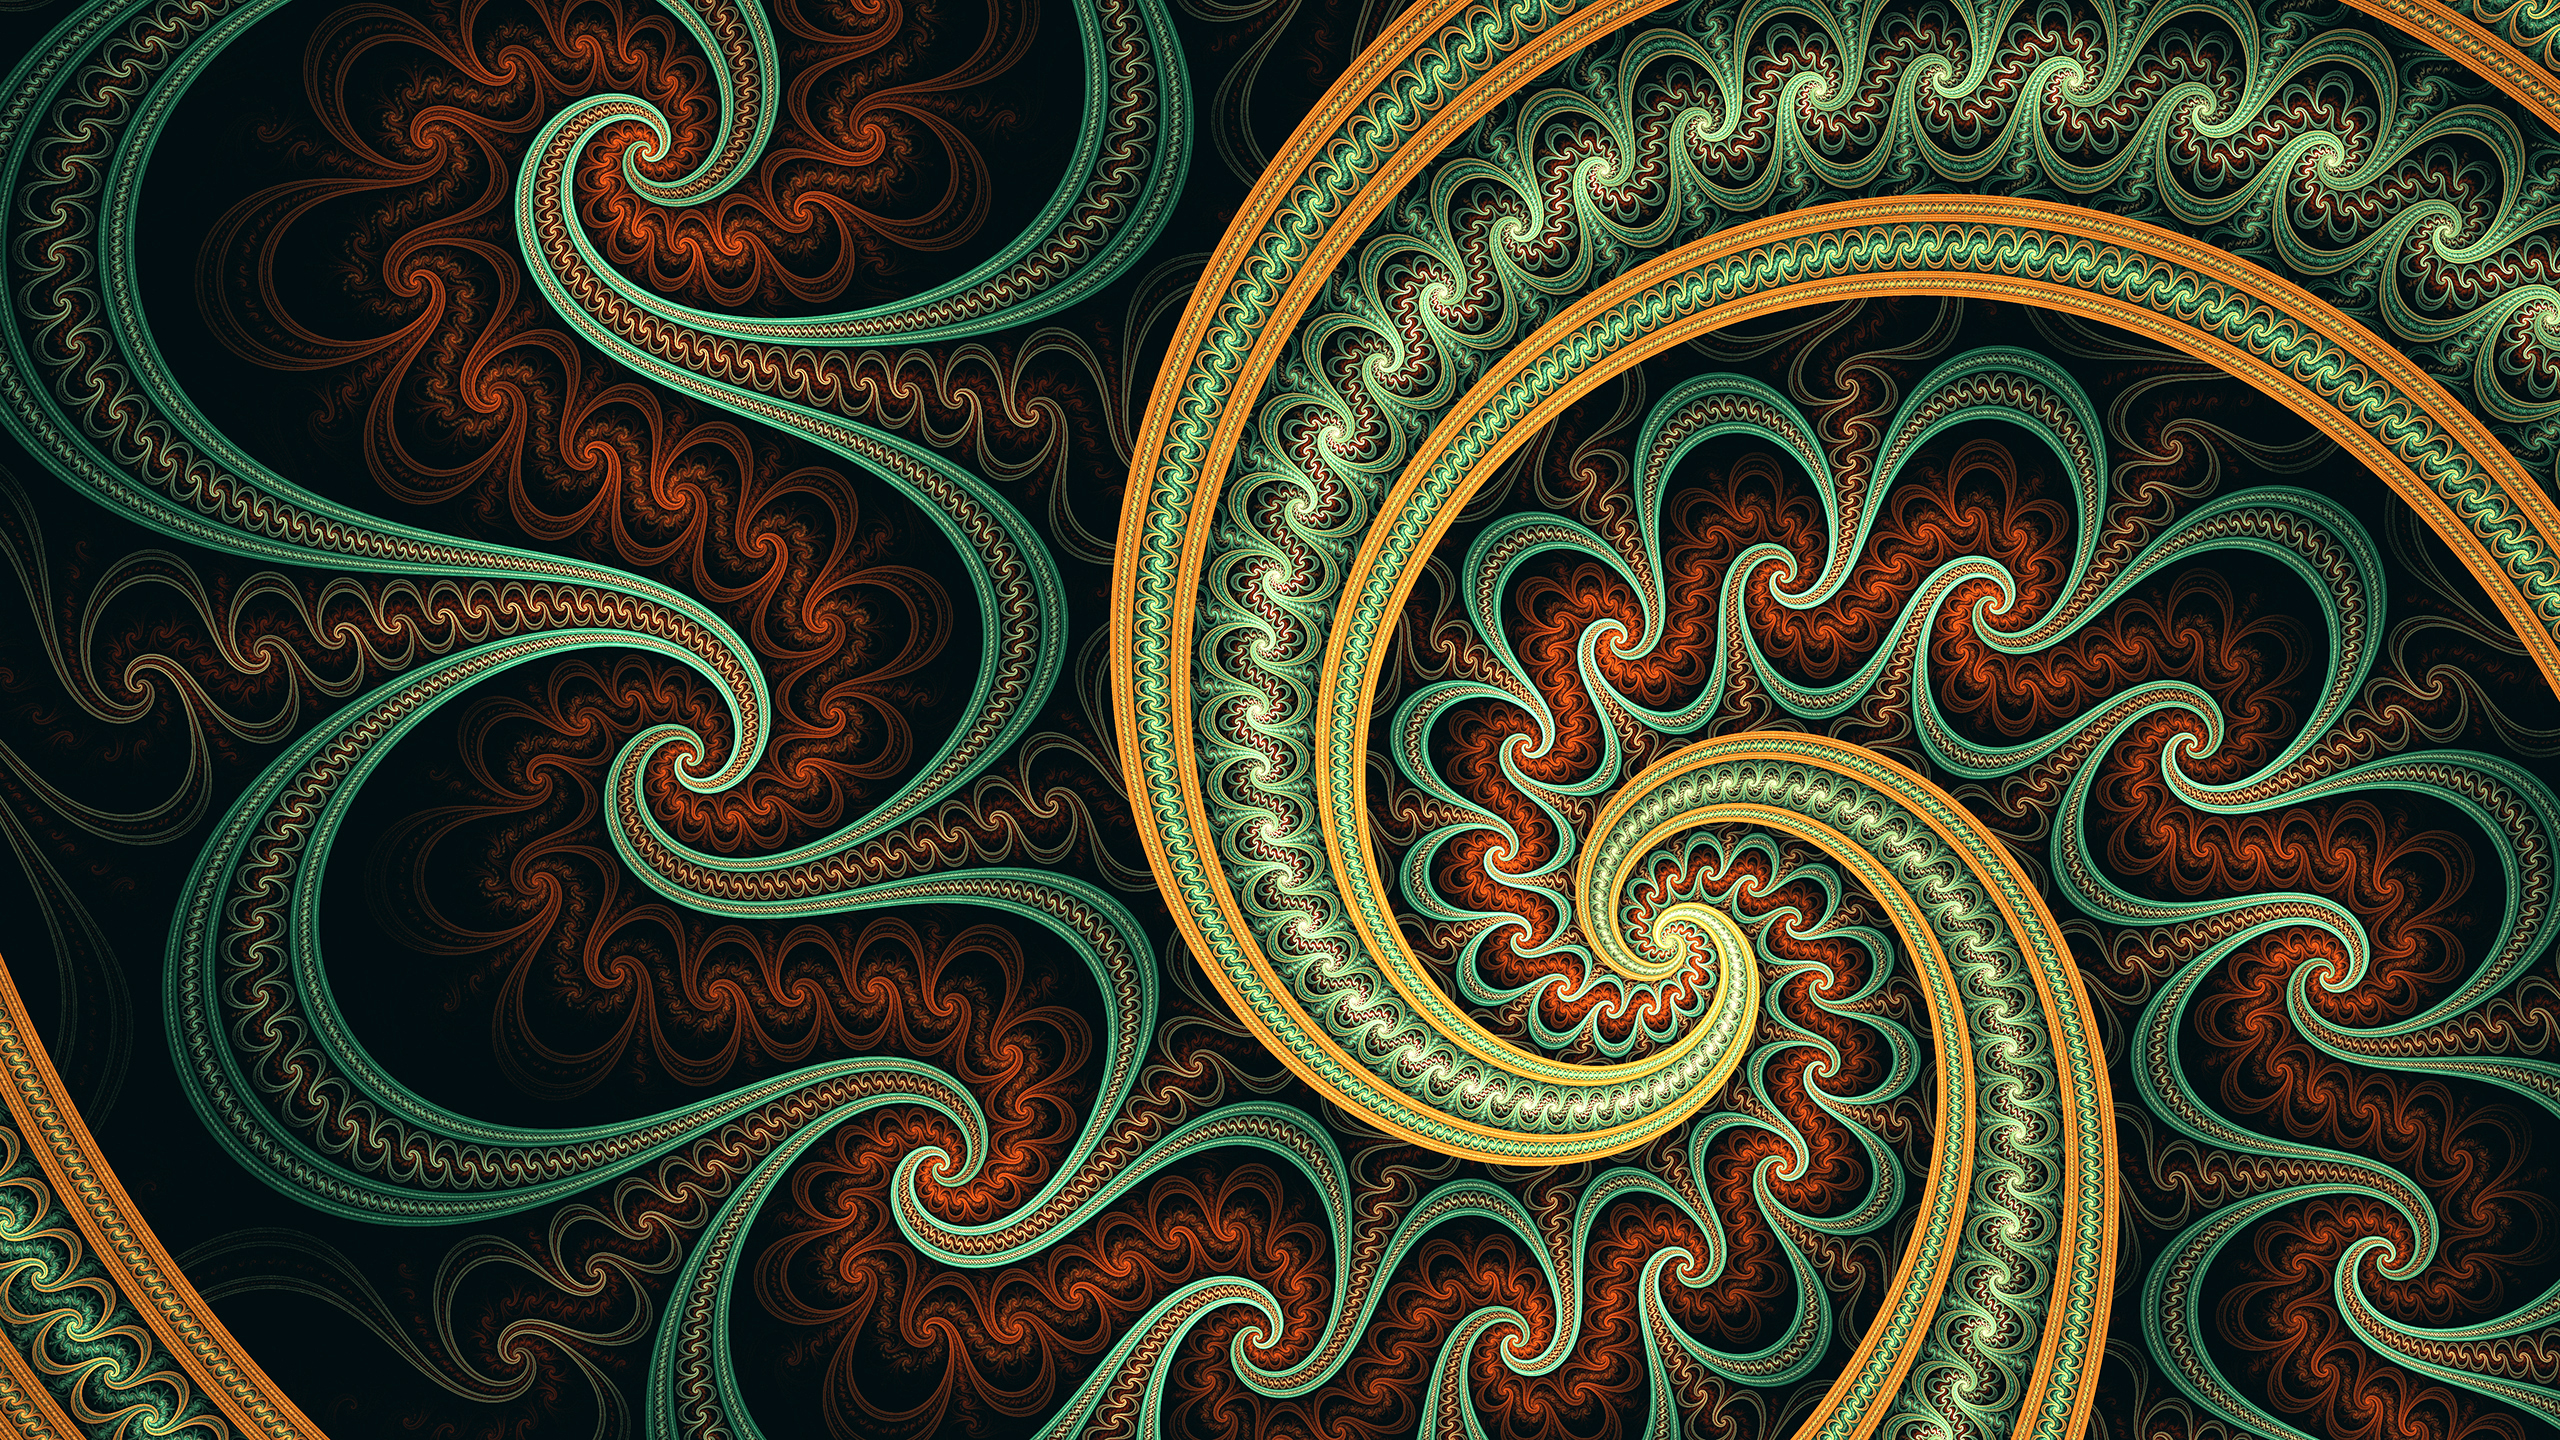 Abstract Artistic Digital Art Fractal Spiral 2560x1440